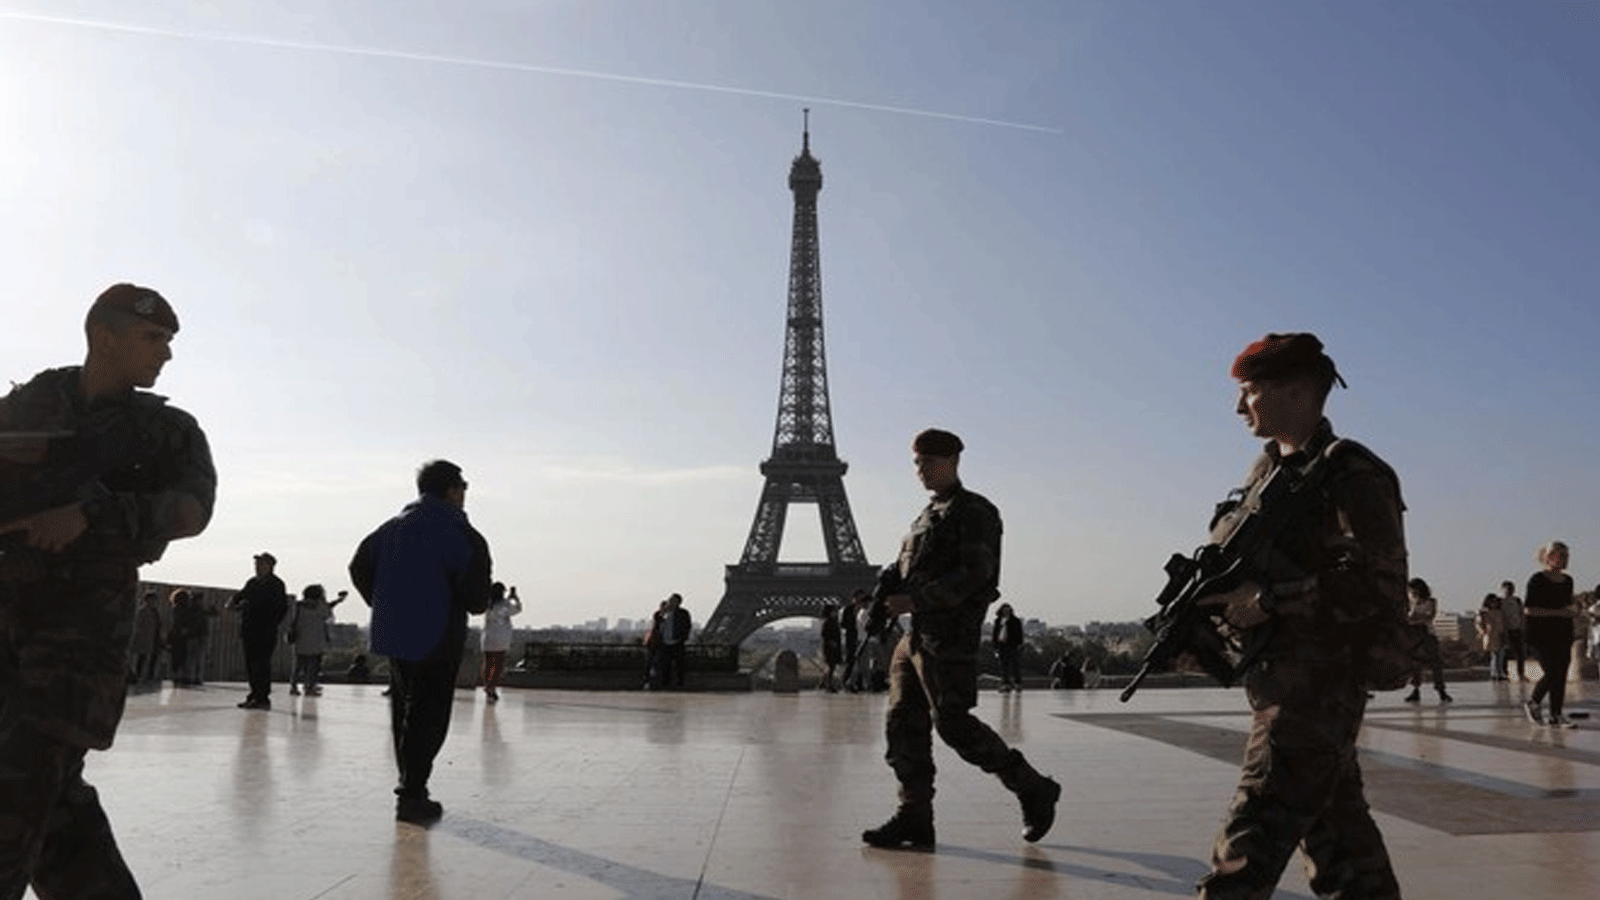 صورة أرشيفية تم التقاطها في 23 أبريل\نيسان 2017 تُظهِر جنودًا فرنسيين من عملية “Operation Sentinelle” يقومون بدورية أمام برج إيفل في باريس